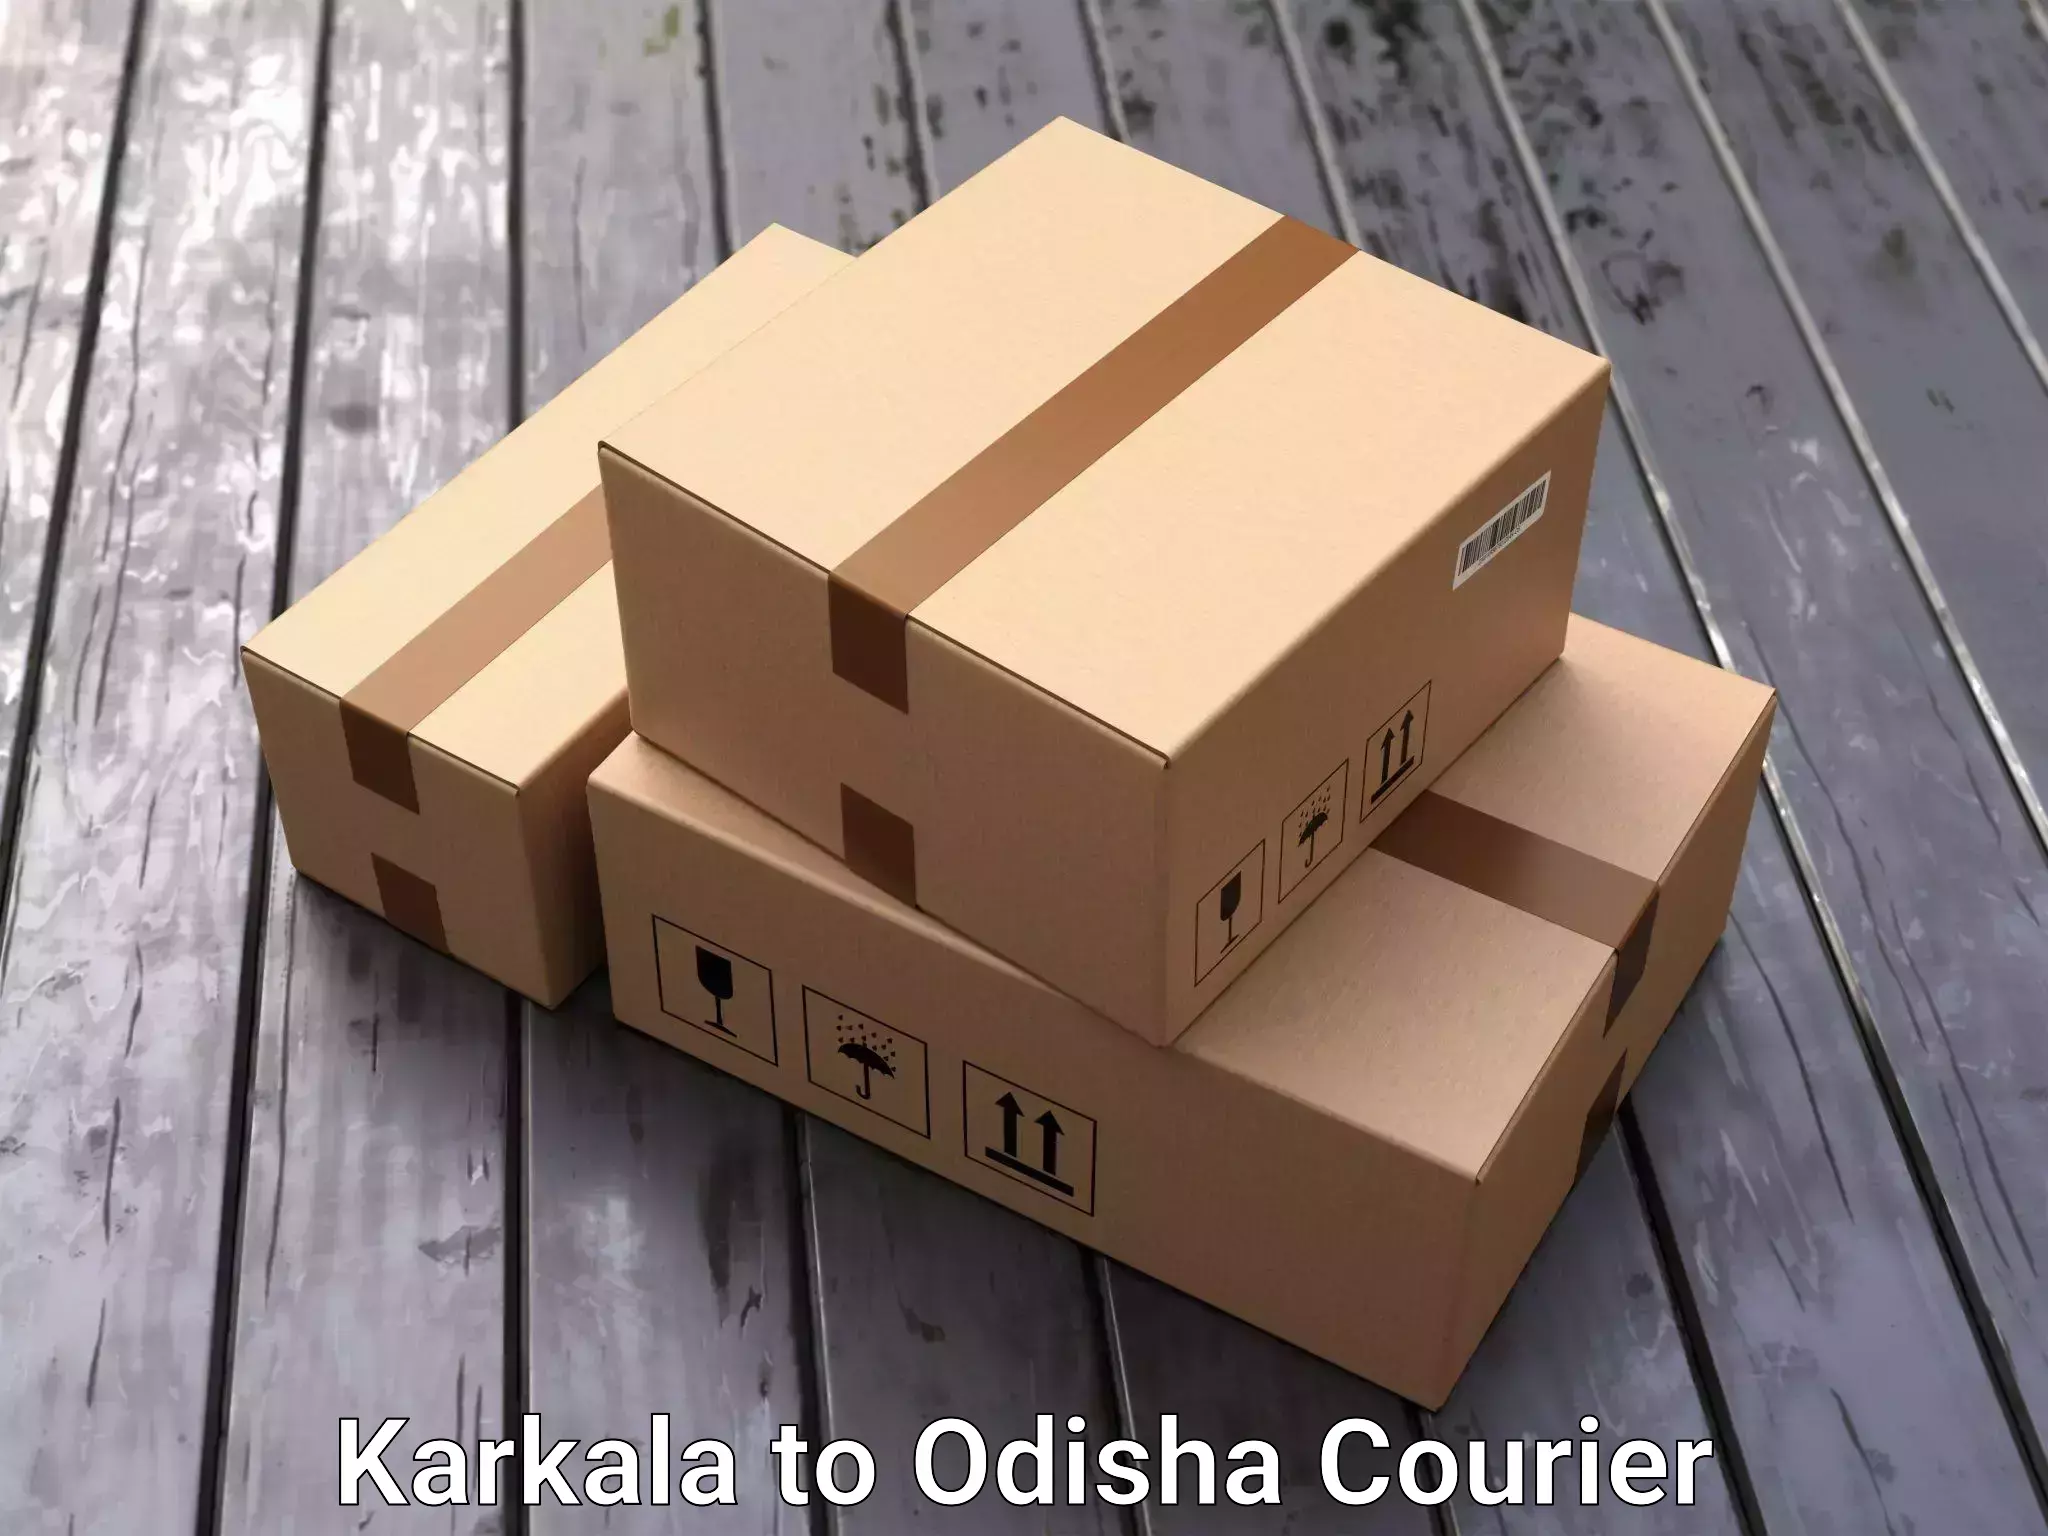 Efficient packing and moving Karkala to Odisha